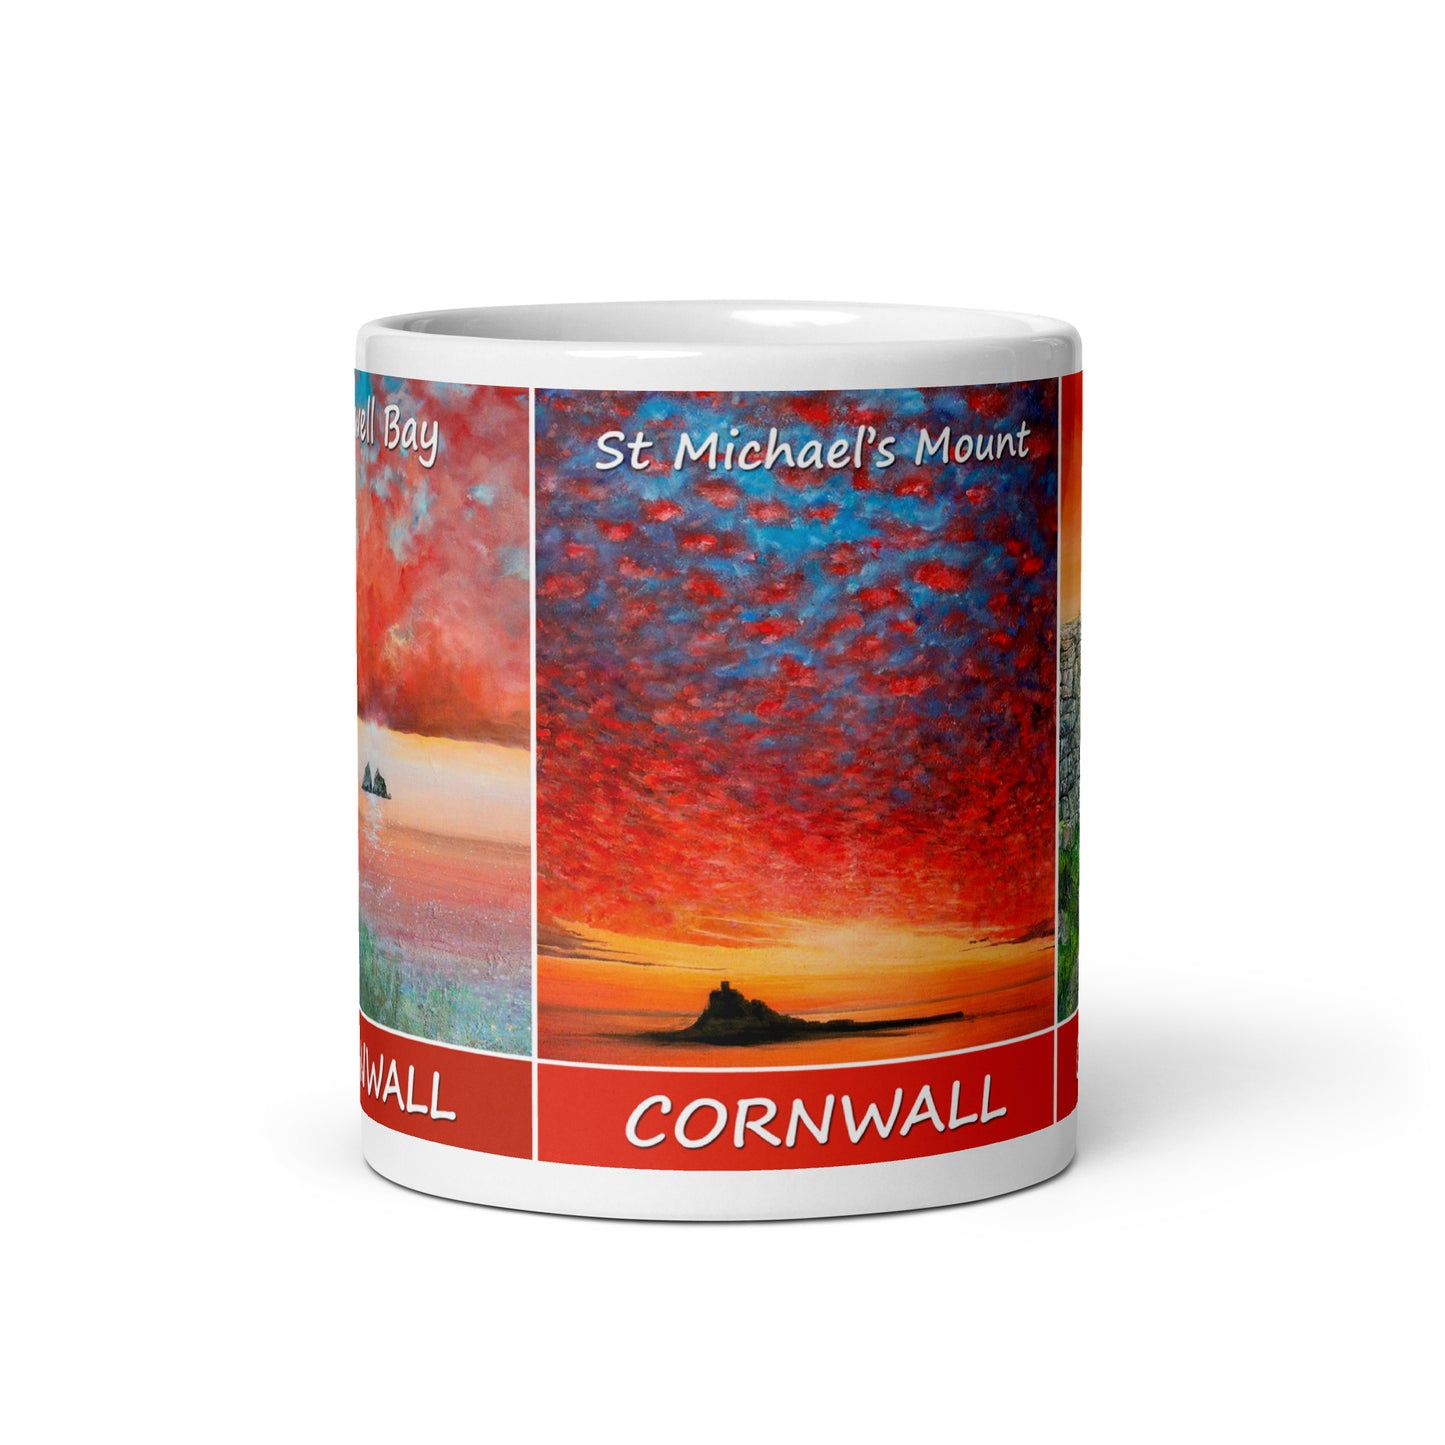 Cornish Reds Postcard Mug